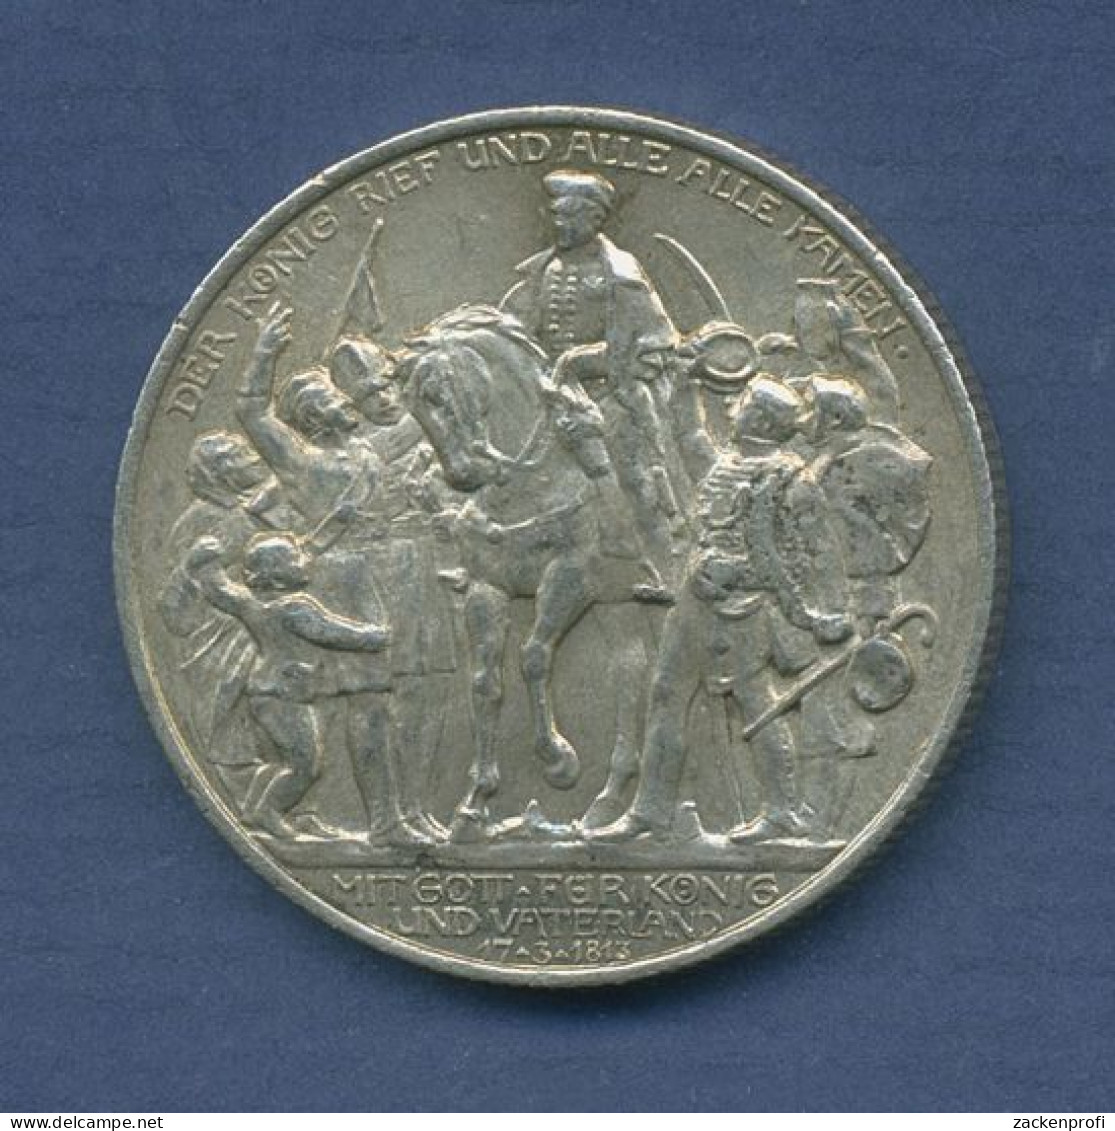 Preußen 2 Mark 1913 A, 100 Jahre Befreiungskriege, J 109 Vz (m6573) - 2, 3 & 5 Mark Argent